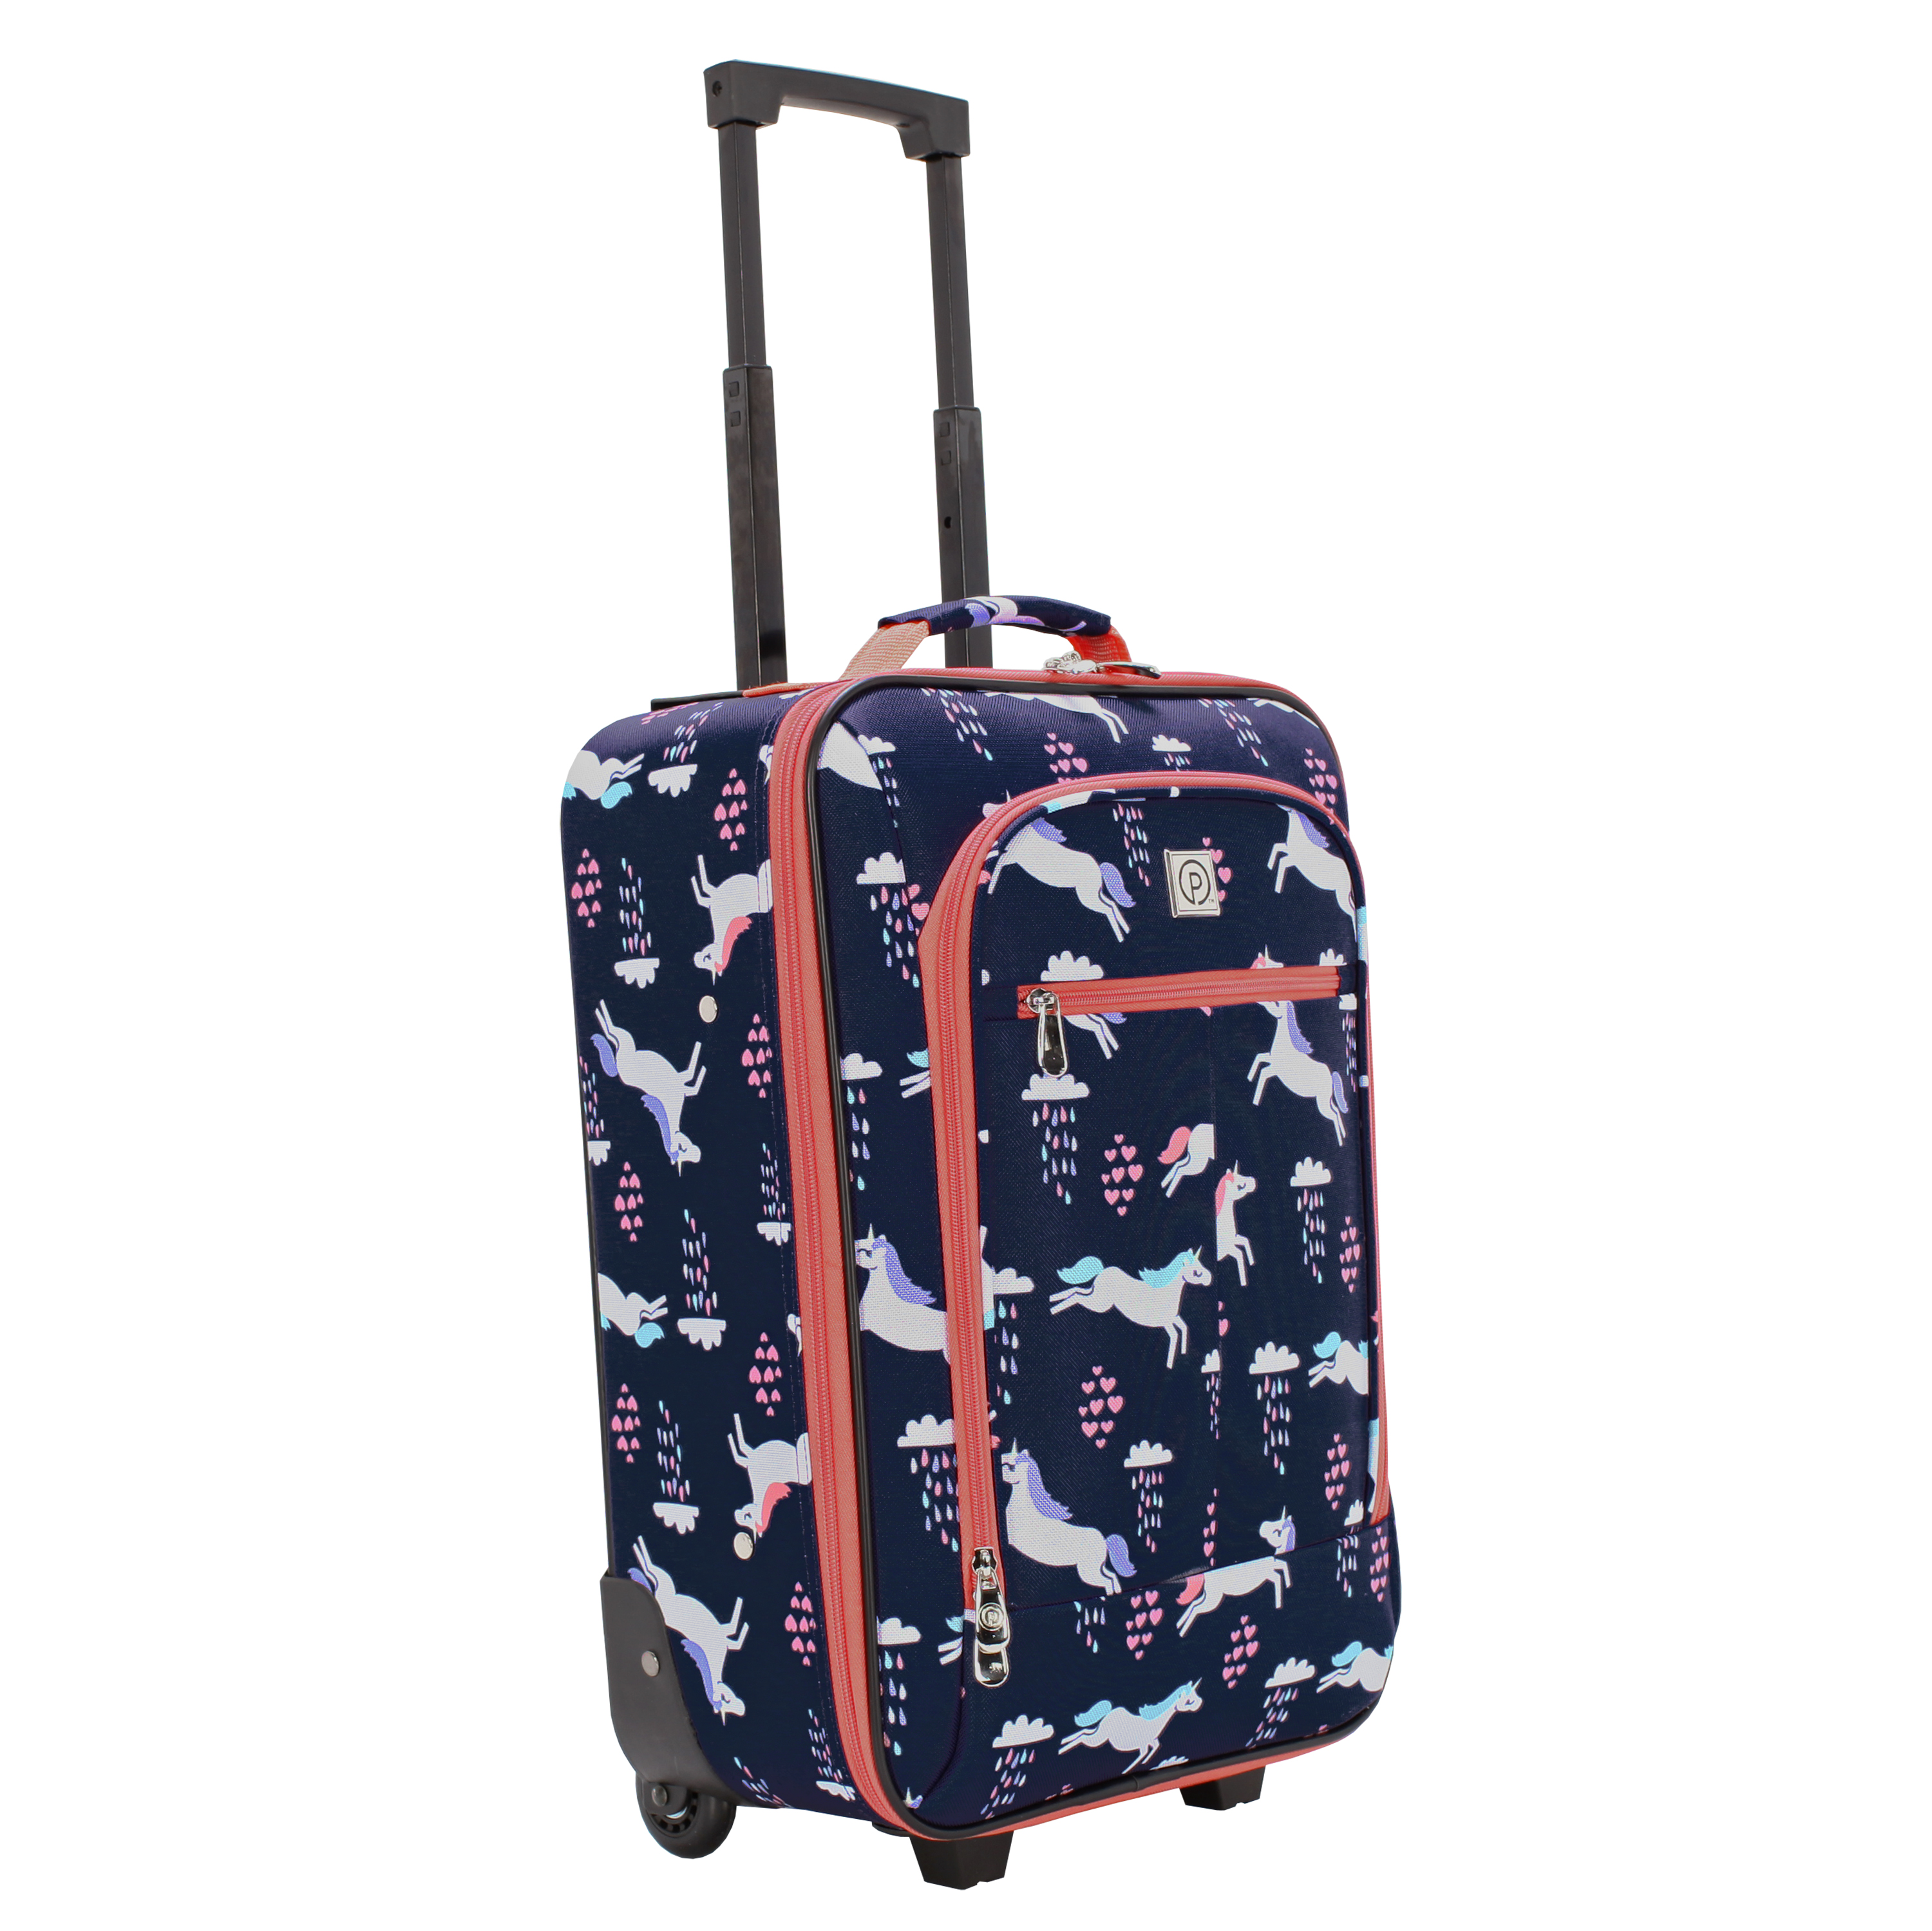 Protege 18" Kids Pilot Case Carry-on Luggage Suitcase, Unicorn - image 5 of 9